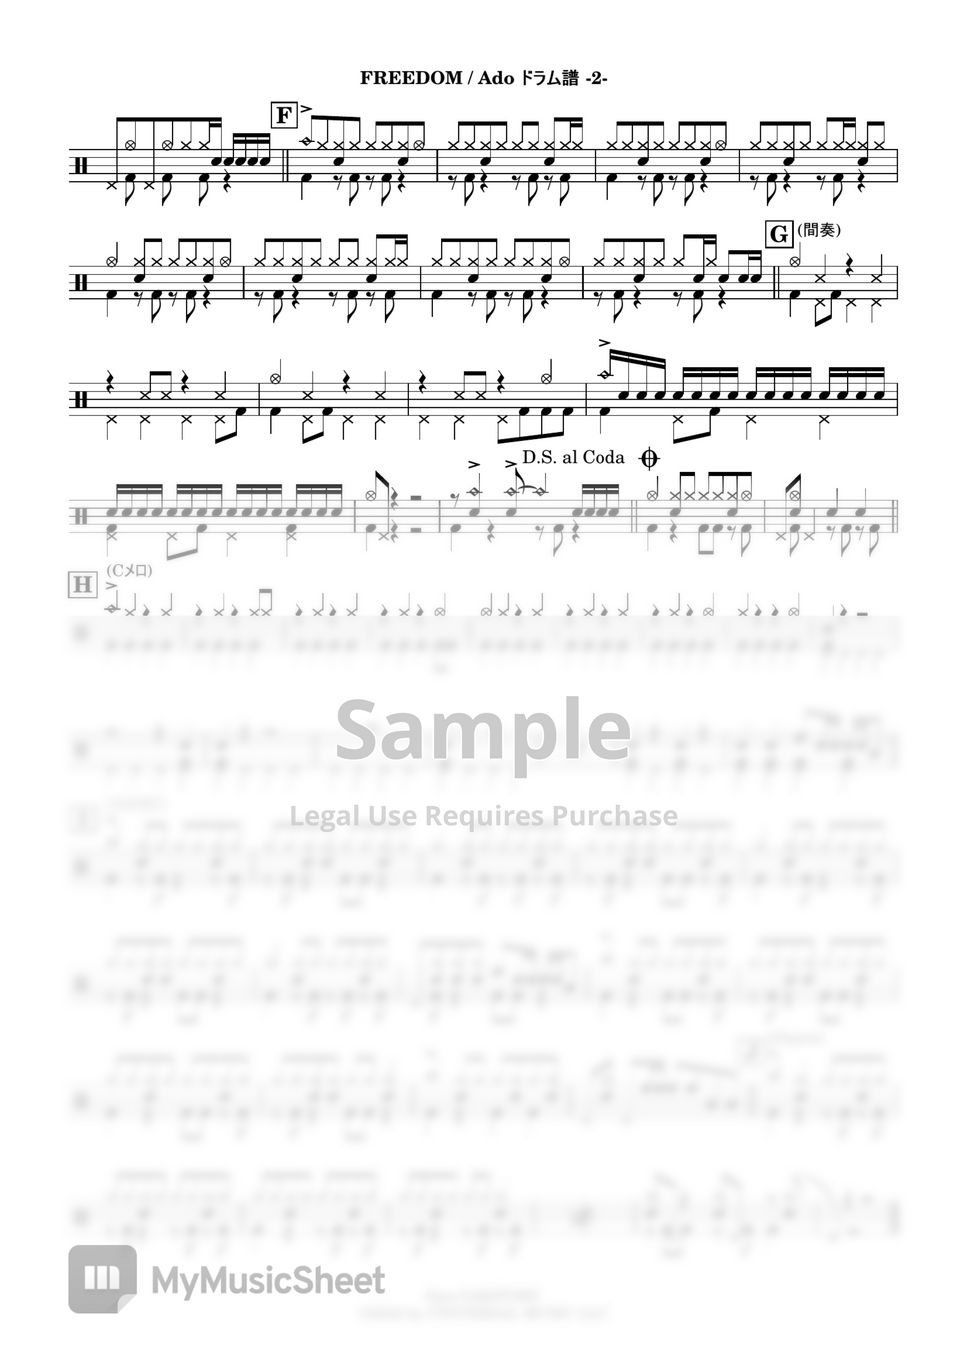 Ado - FREEDOM (Drums Score + MIDI) by Kensaku Suzuki